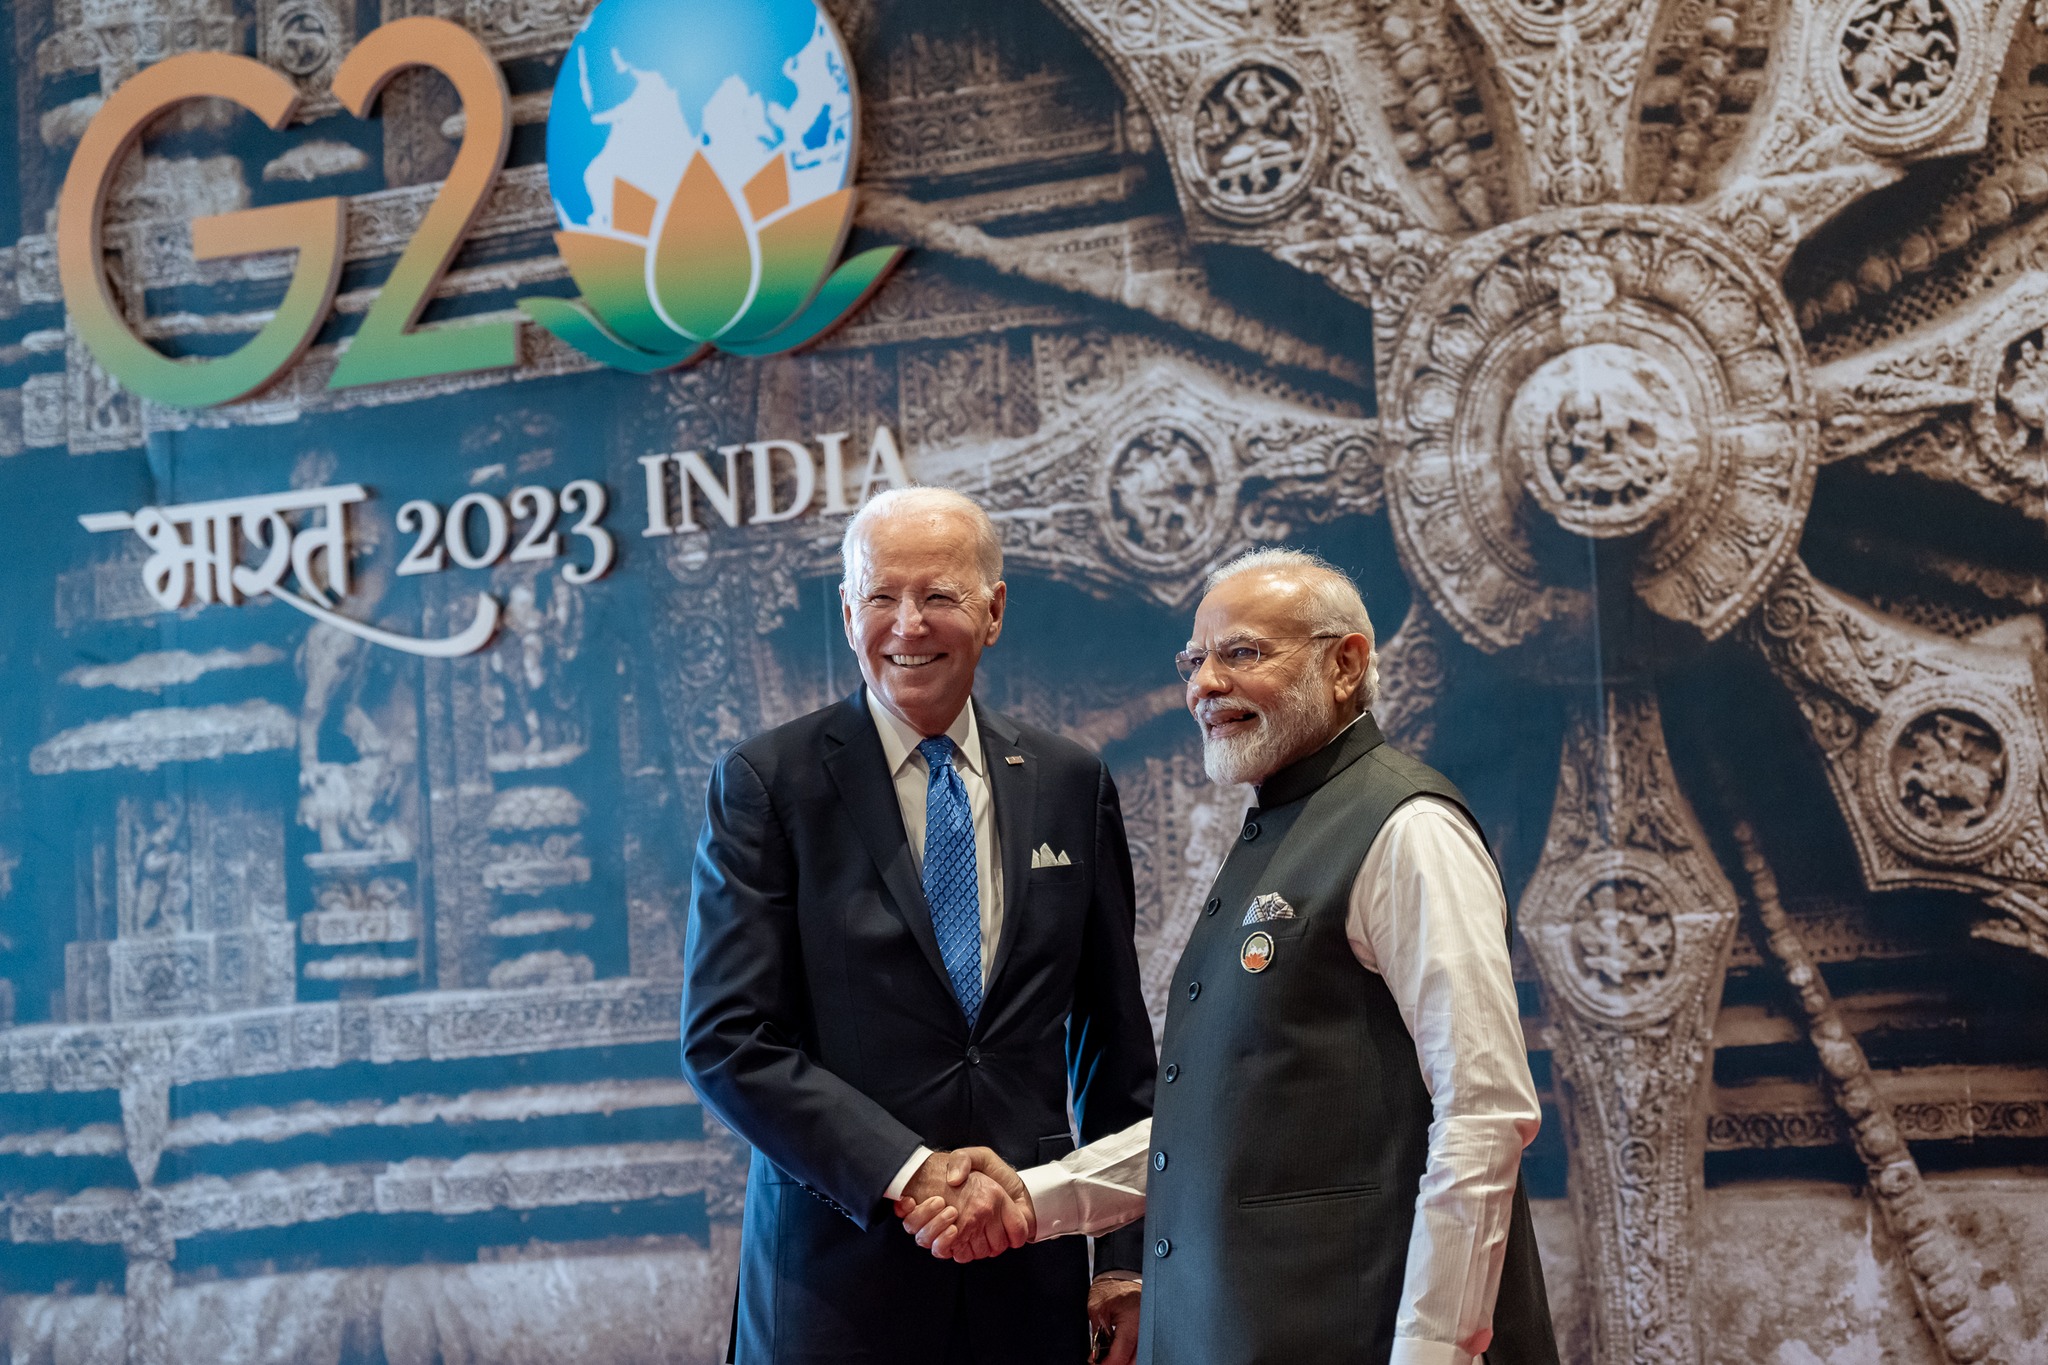 Η αποτίμηση της συνόδου των G20 στην Ινδία και η συμφωνία που ενδιαφέρει την Ελλάδα